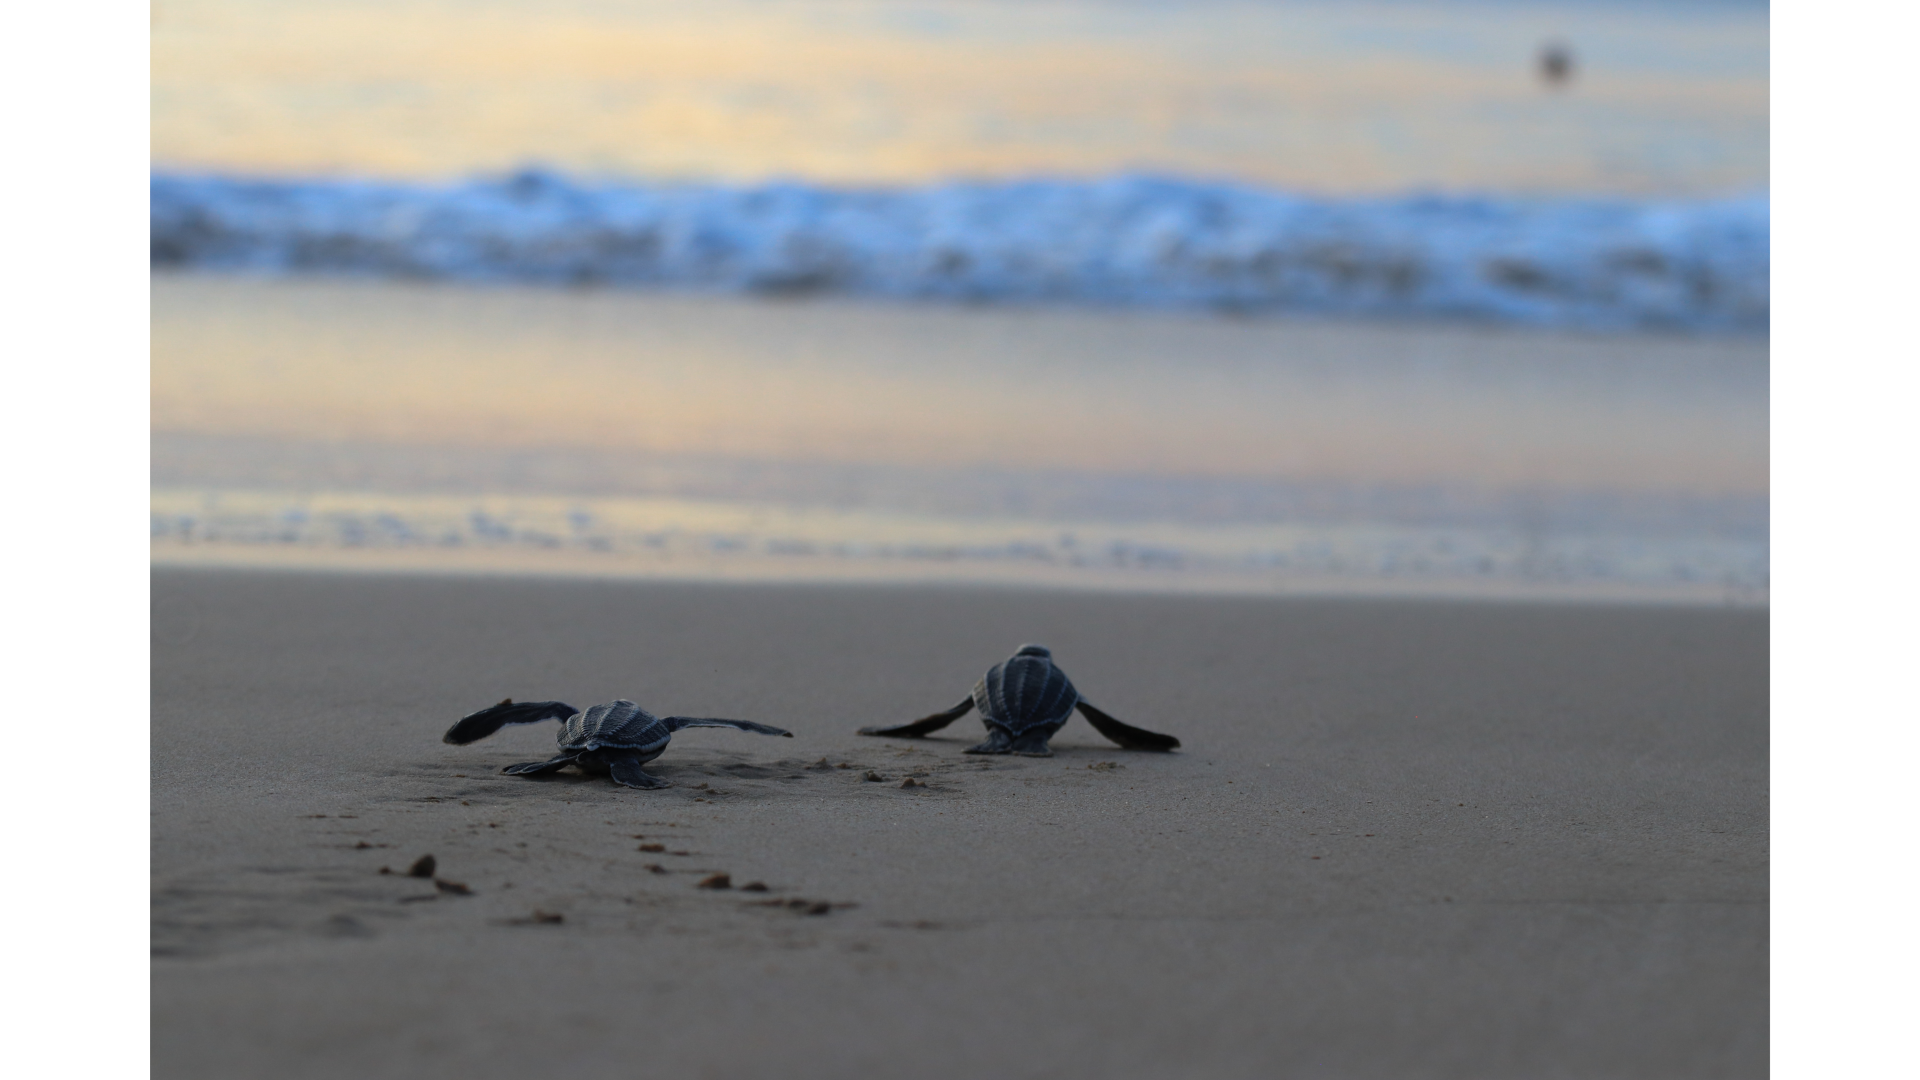 Protecting Aruba's Precious Sea Turtles